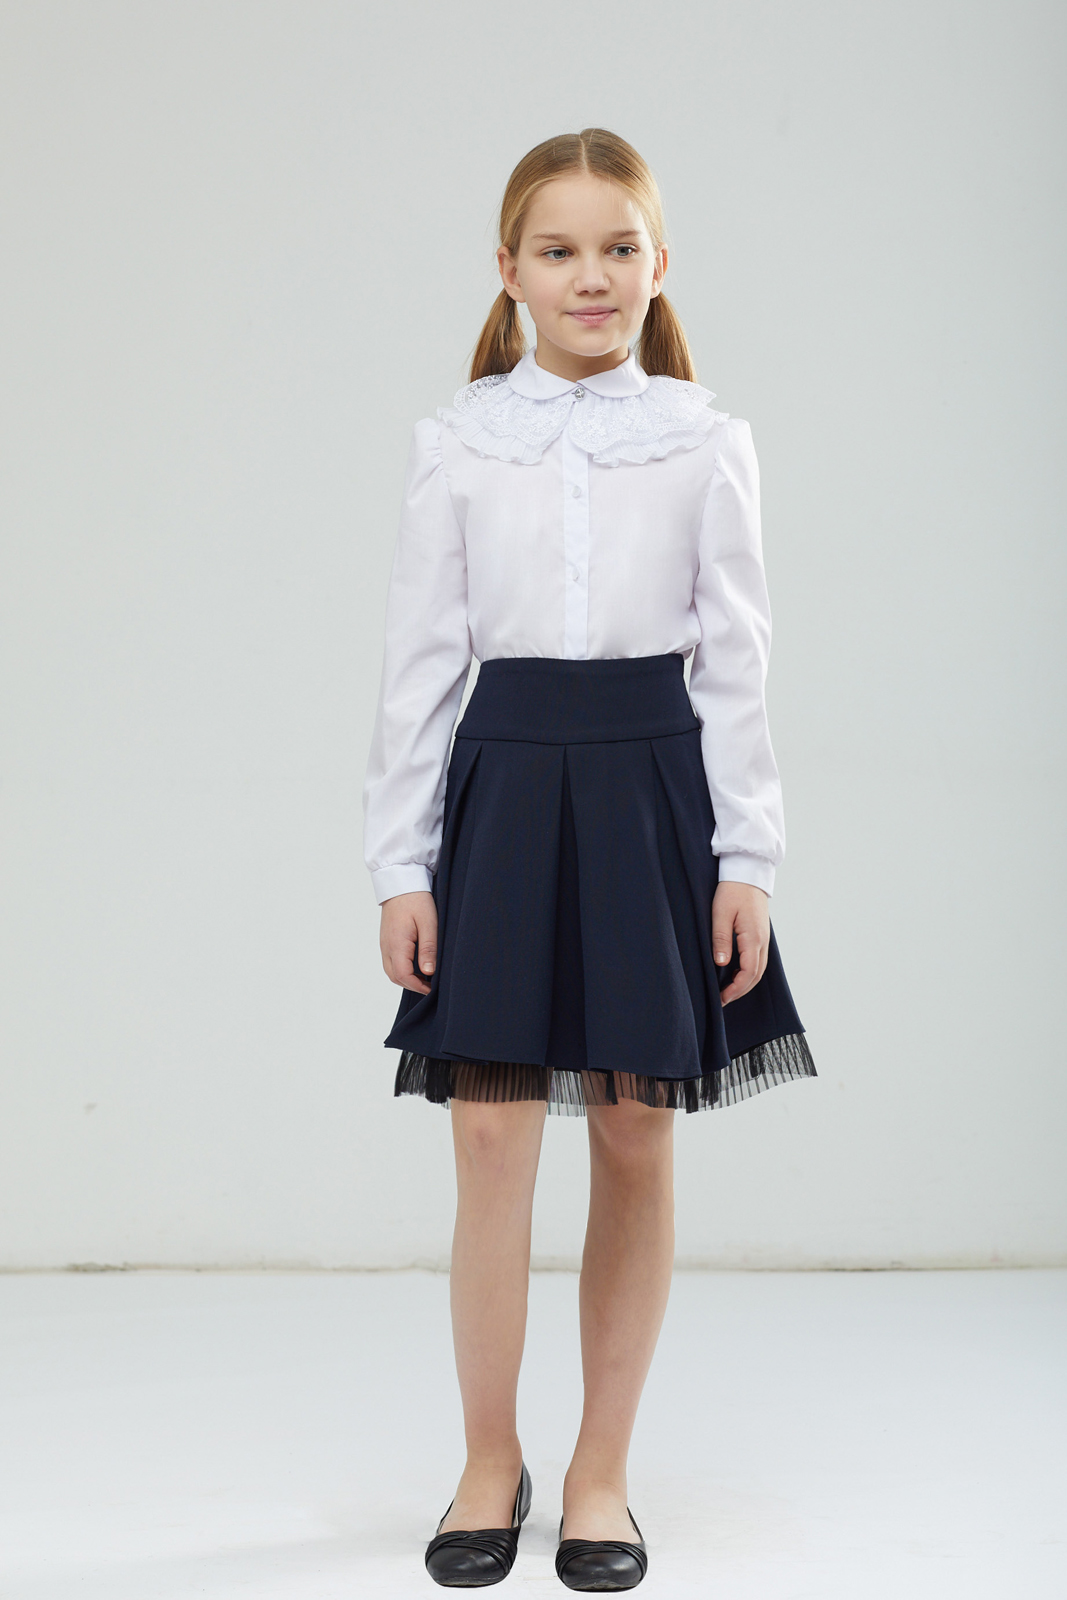 Блузка для девочки Смена, цвет: белый. 17с121. Размер 158-72